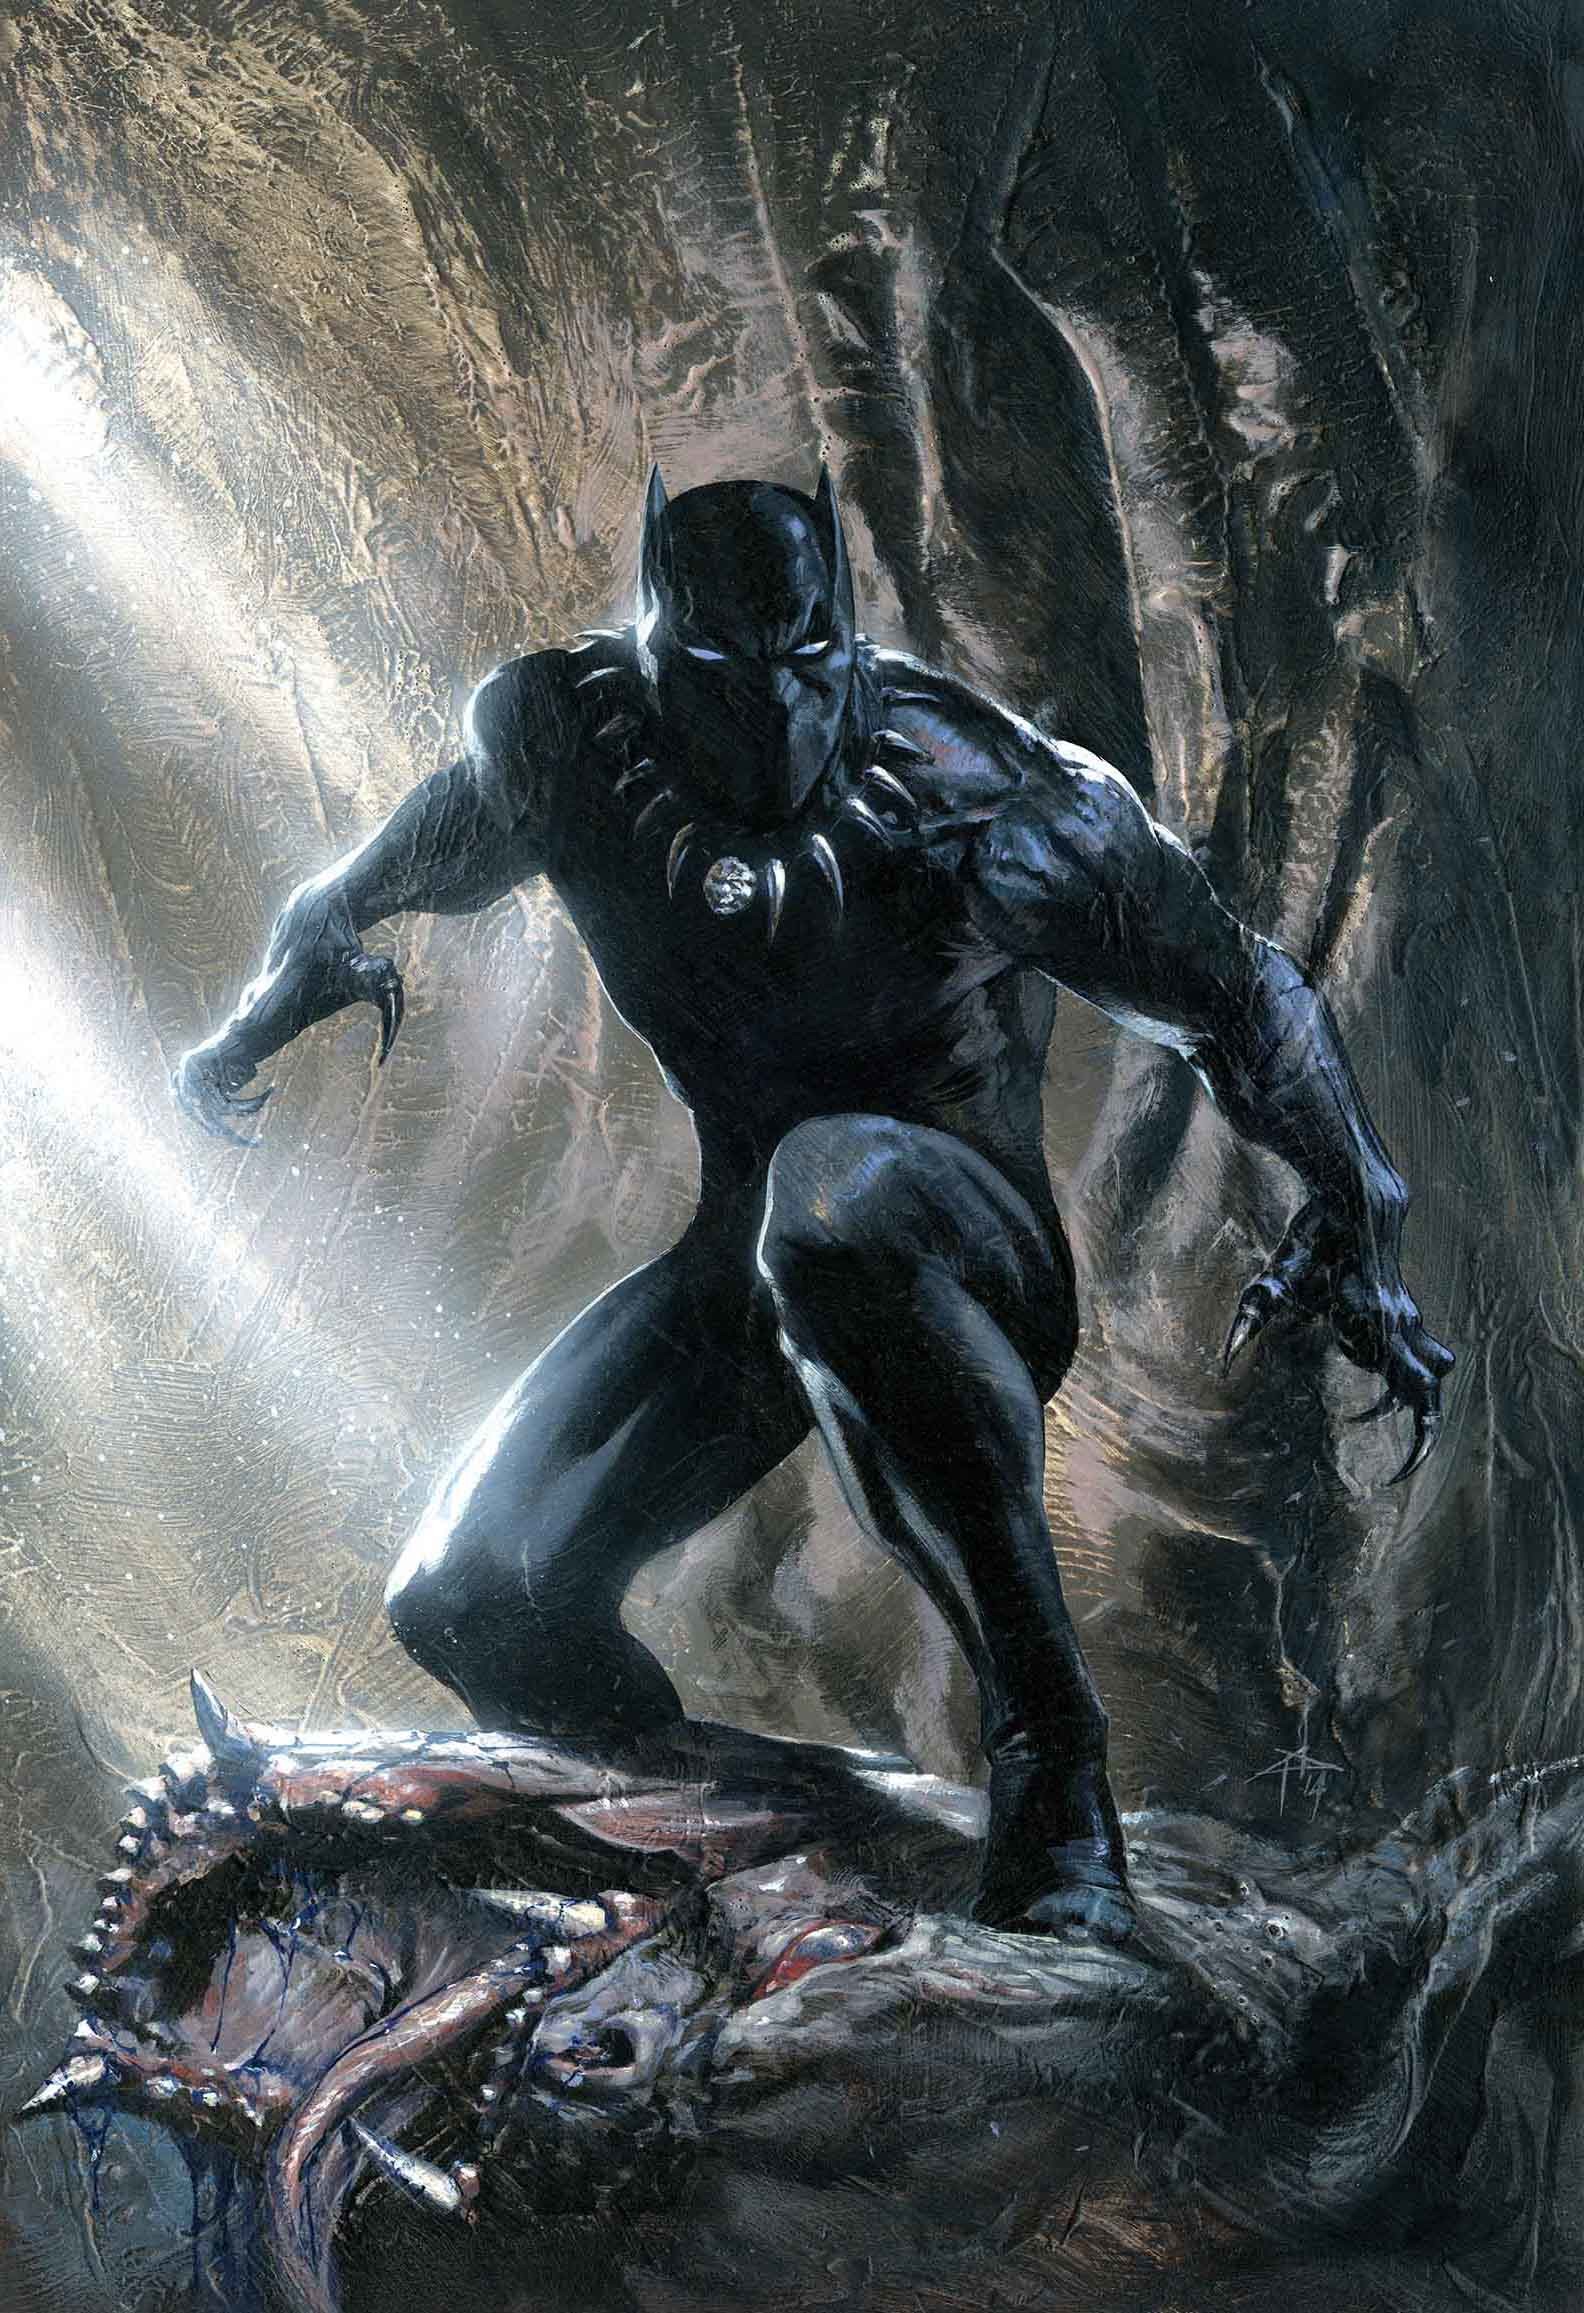 Black Panther KOD and Iron Fist